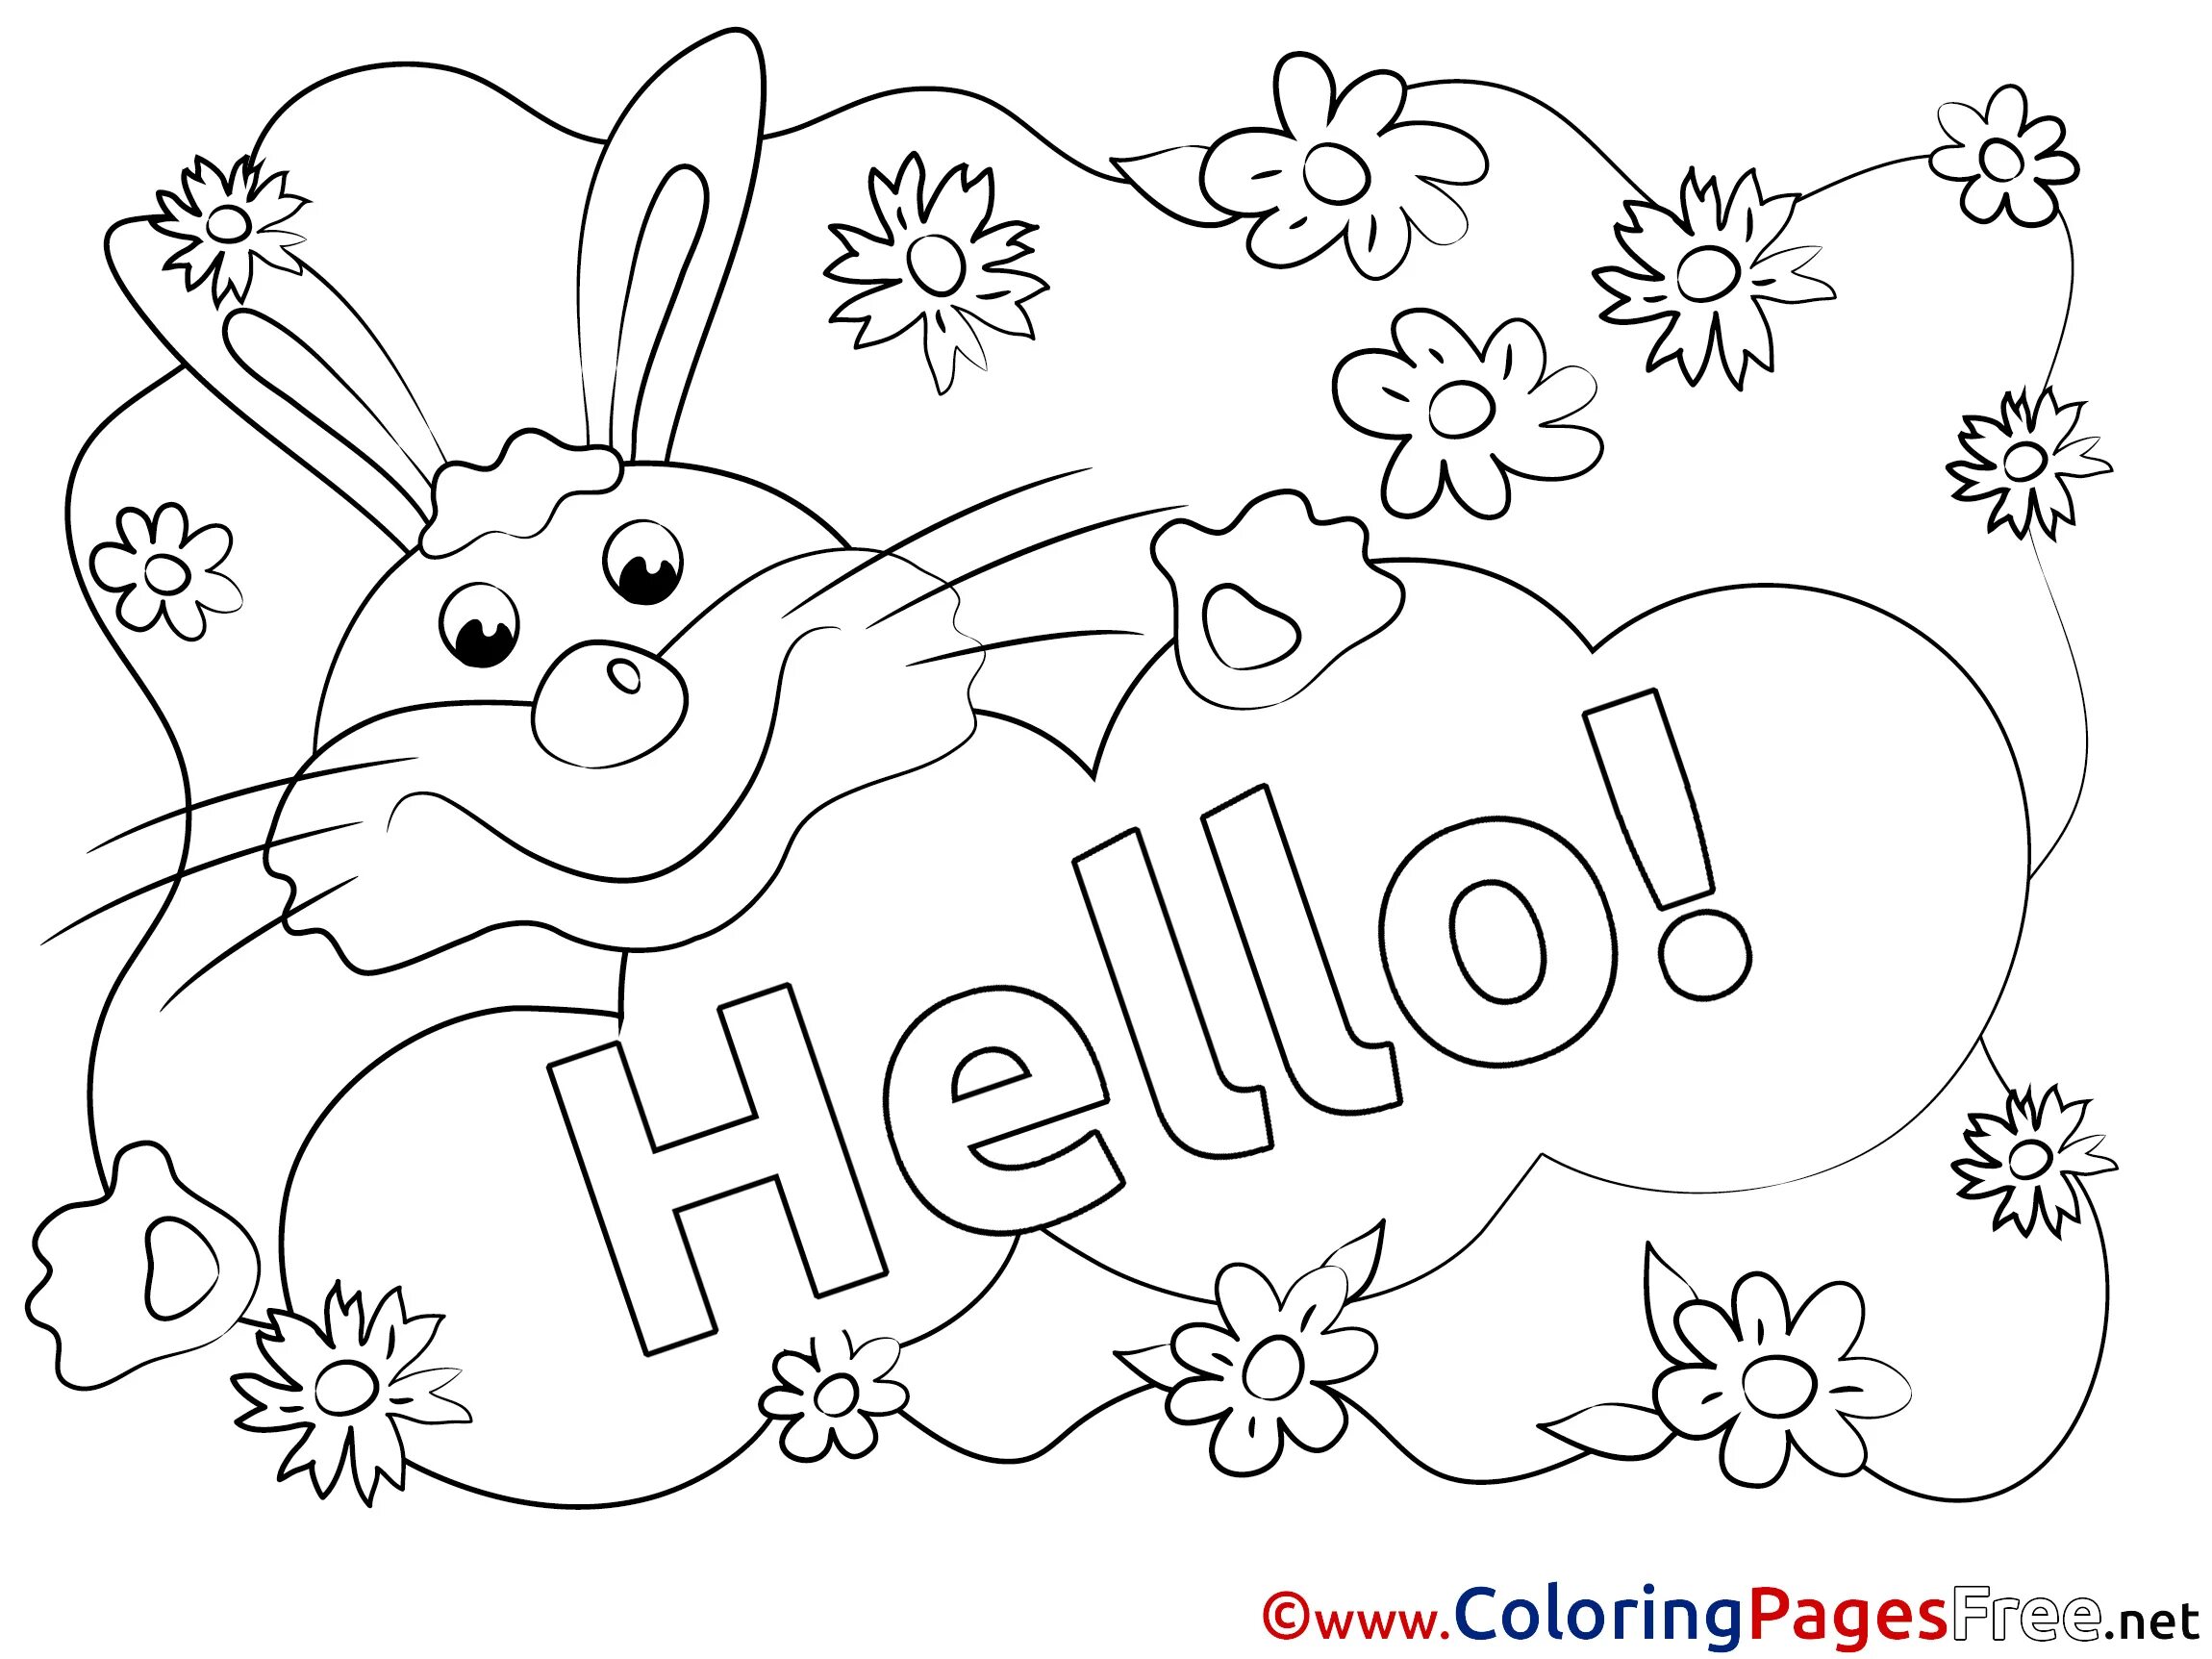 Hello coloring. Раскраска английский язык. Hello раскраска для детей. Раскраска привет. Привет раскраска для детей.